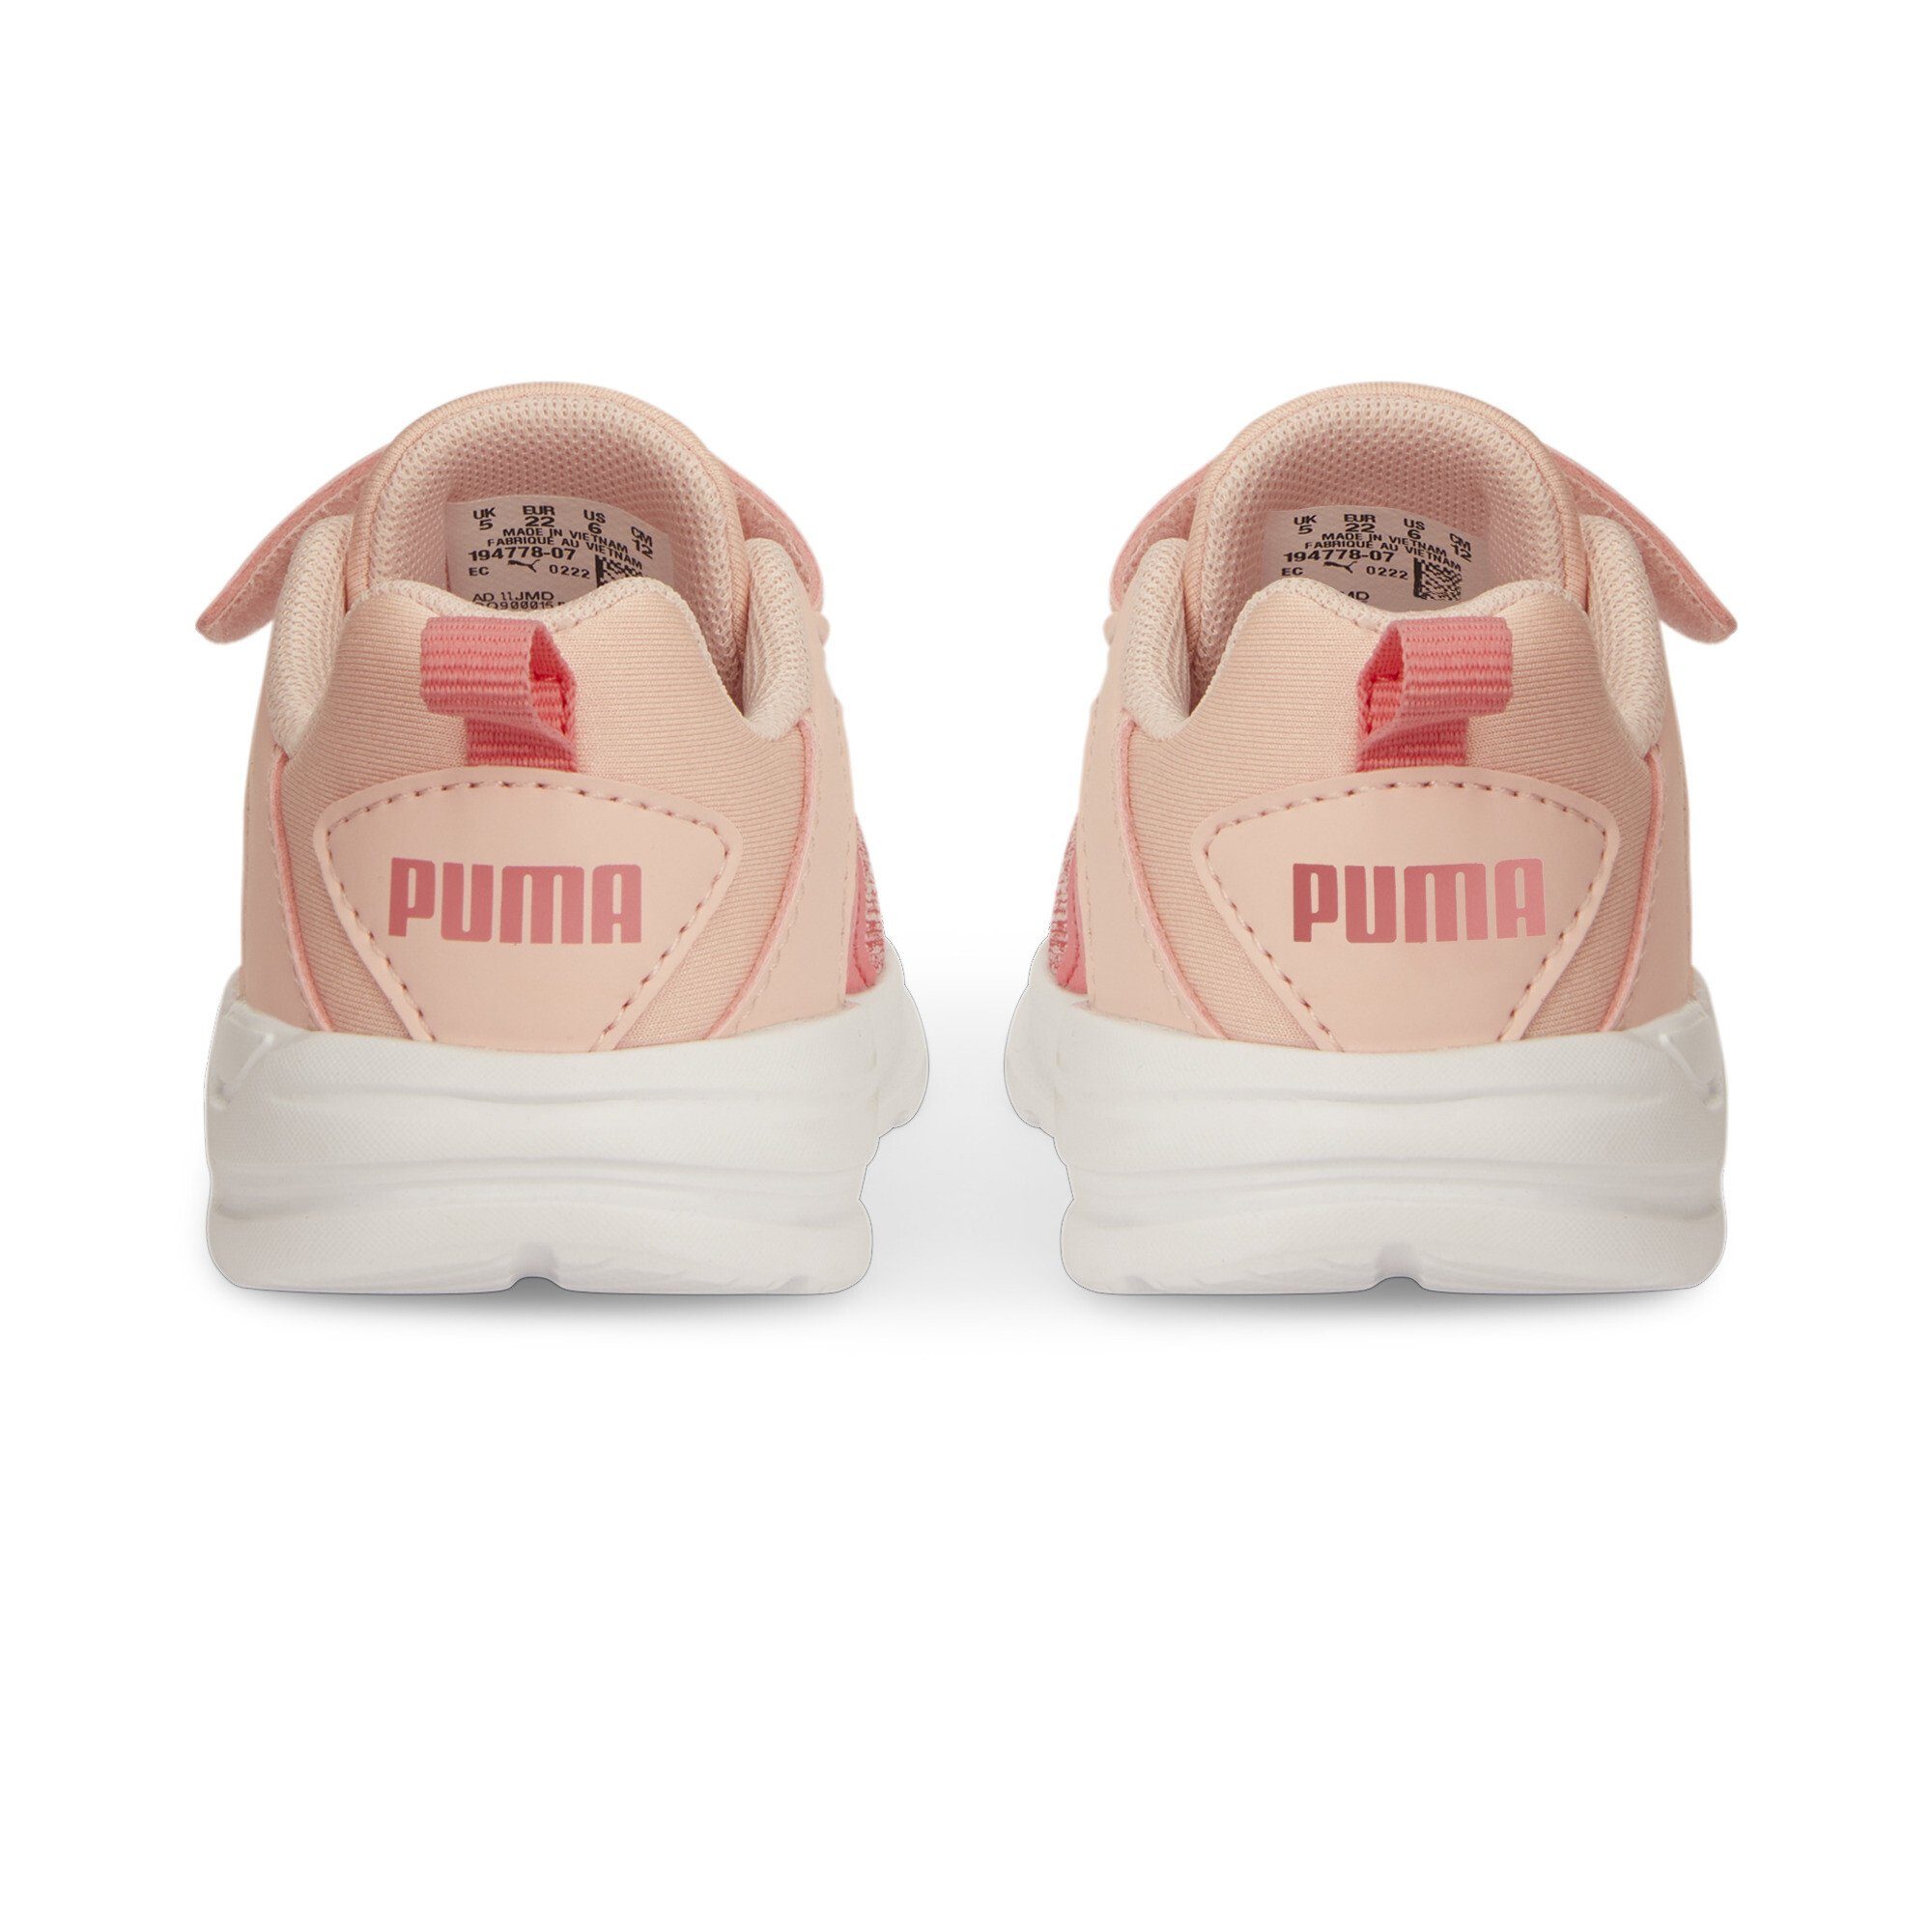 PUMA Comet 2 Alt Dust V Rose Kinder Pink Loveable Sneaker Laufschuh